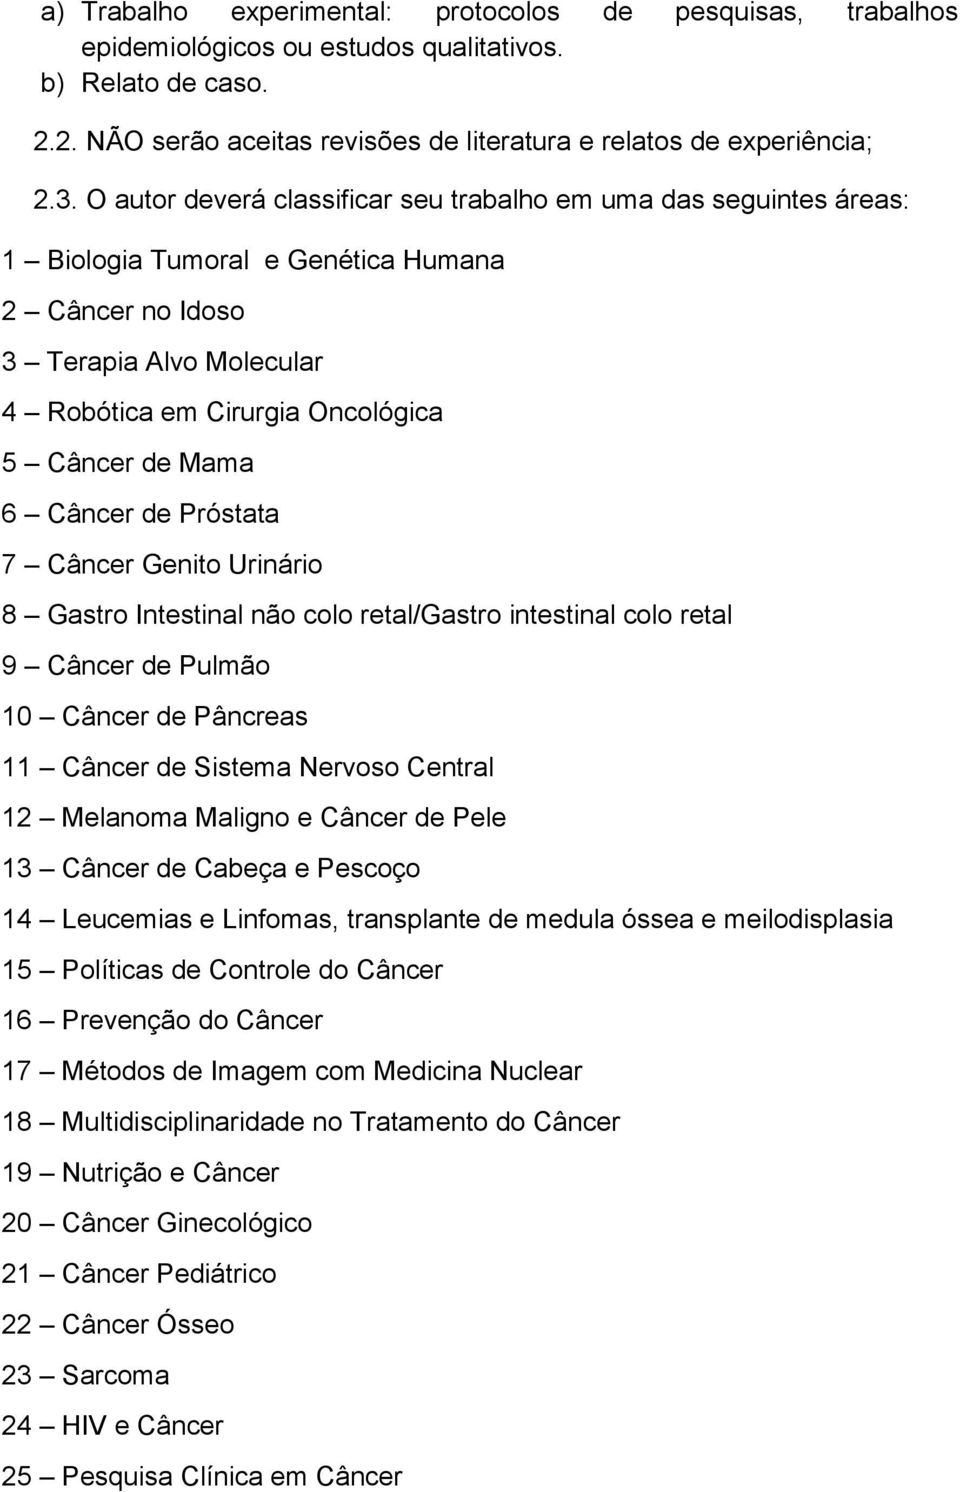 6 Câncer de Próstata 7 Câncer Genito Urinário 8 Gastro Intestinal não colo retal/gastro intestinal colo retal 9 Câncer de Pulmão 10 Câncer de Pâncreas 11 Câncer de Sistema Nervoso Central 12 Melanoma